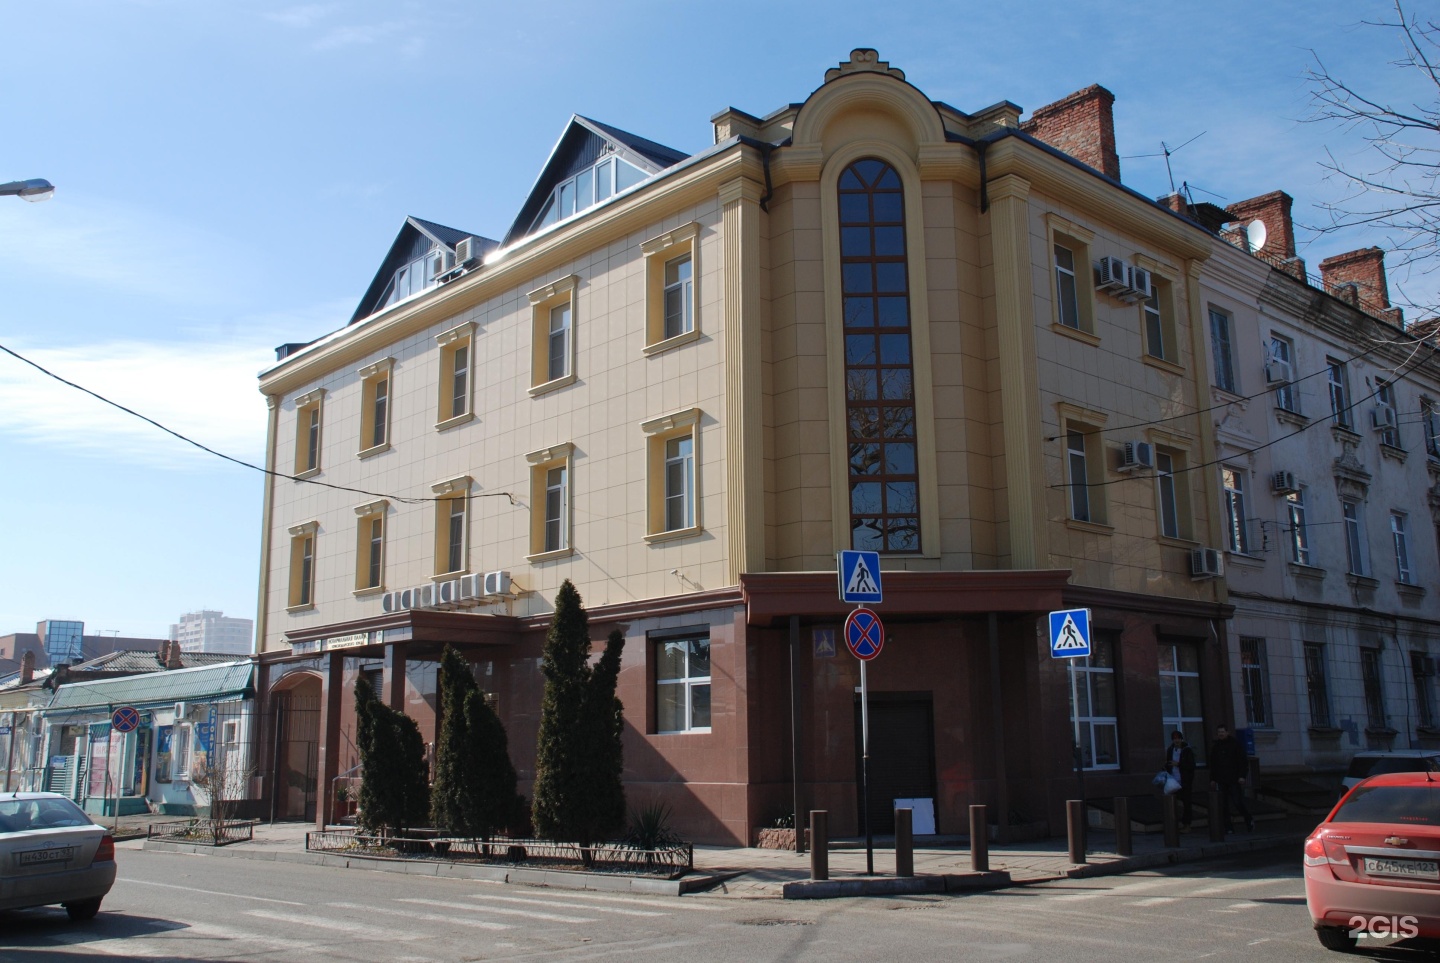 Октябрьская 120 омск. Нотариальная палата Северной Осетии фото здания.